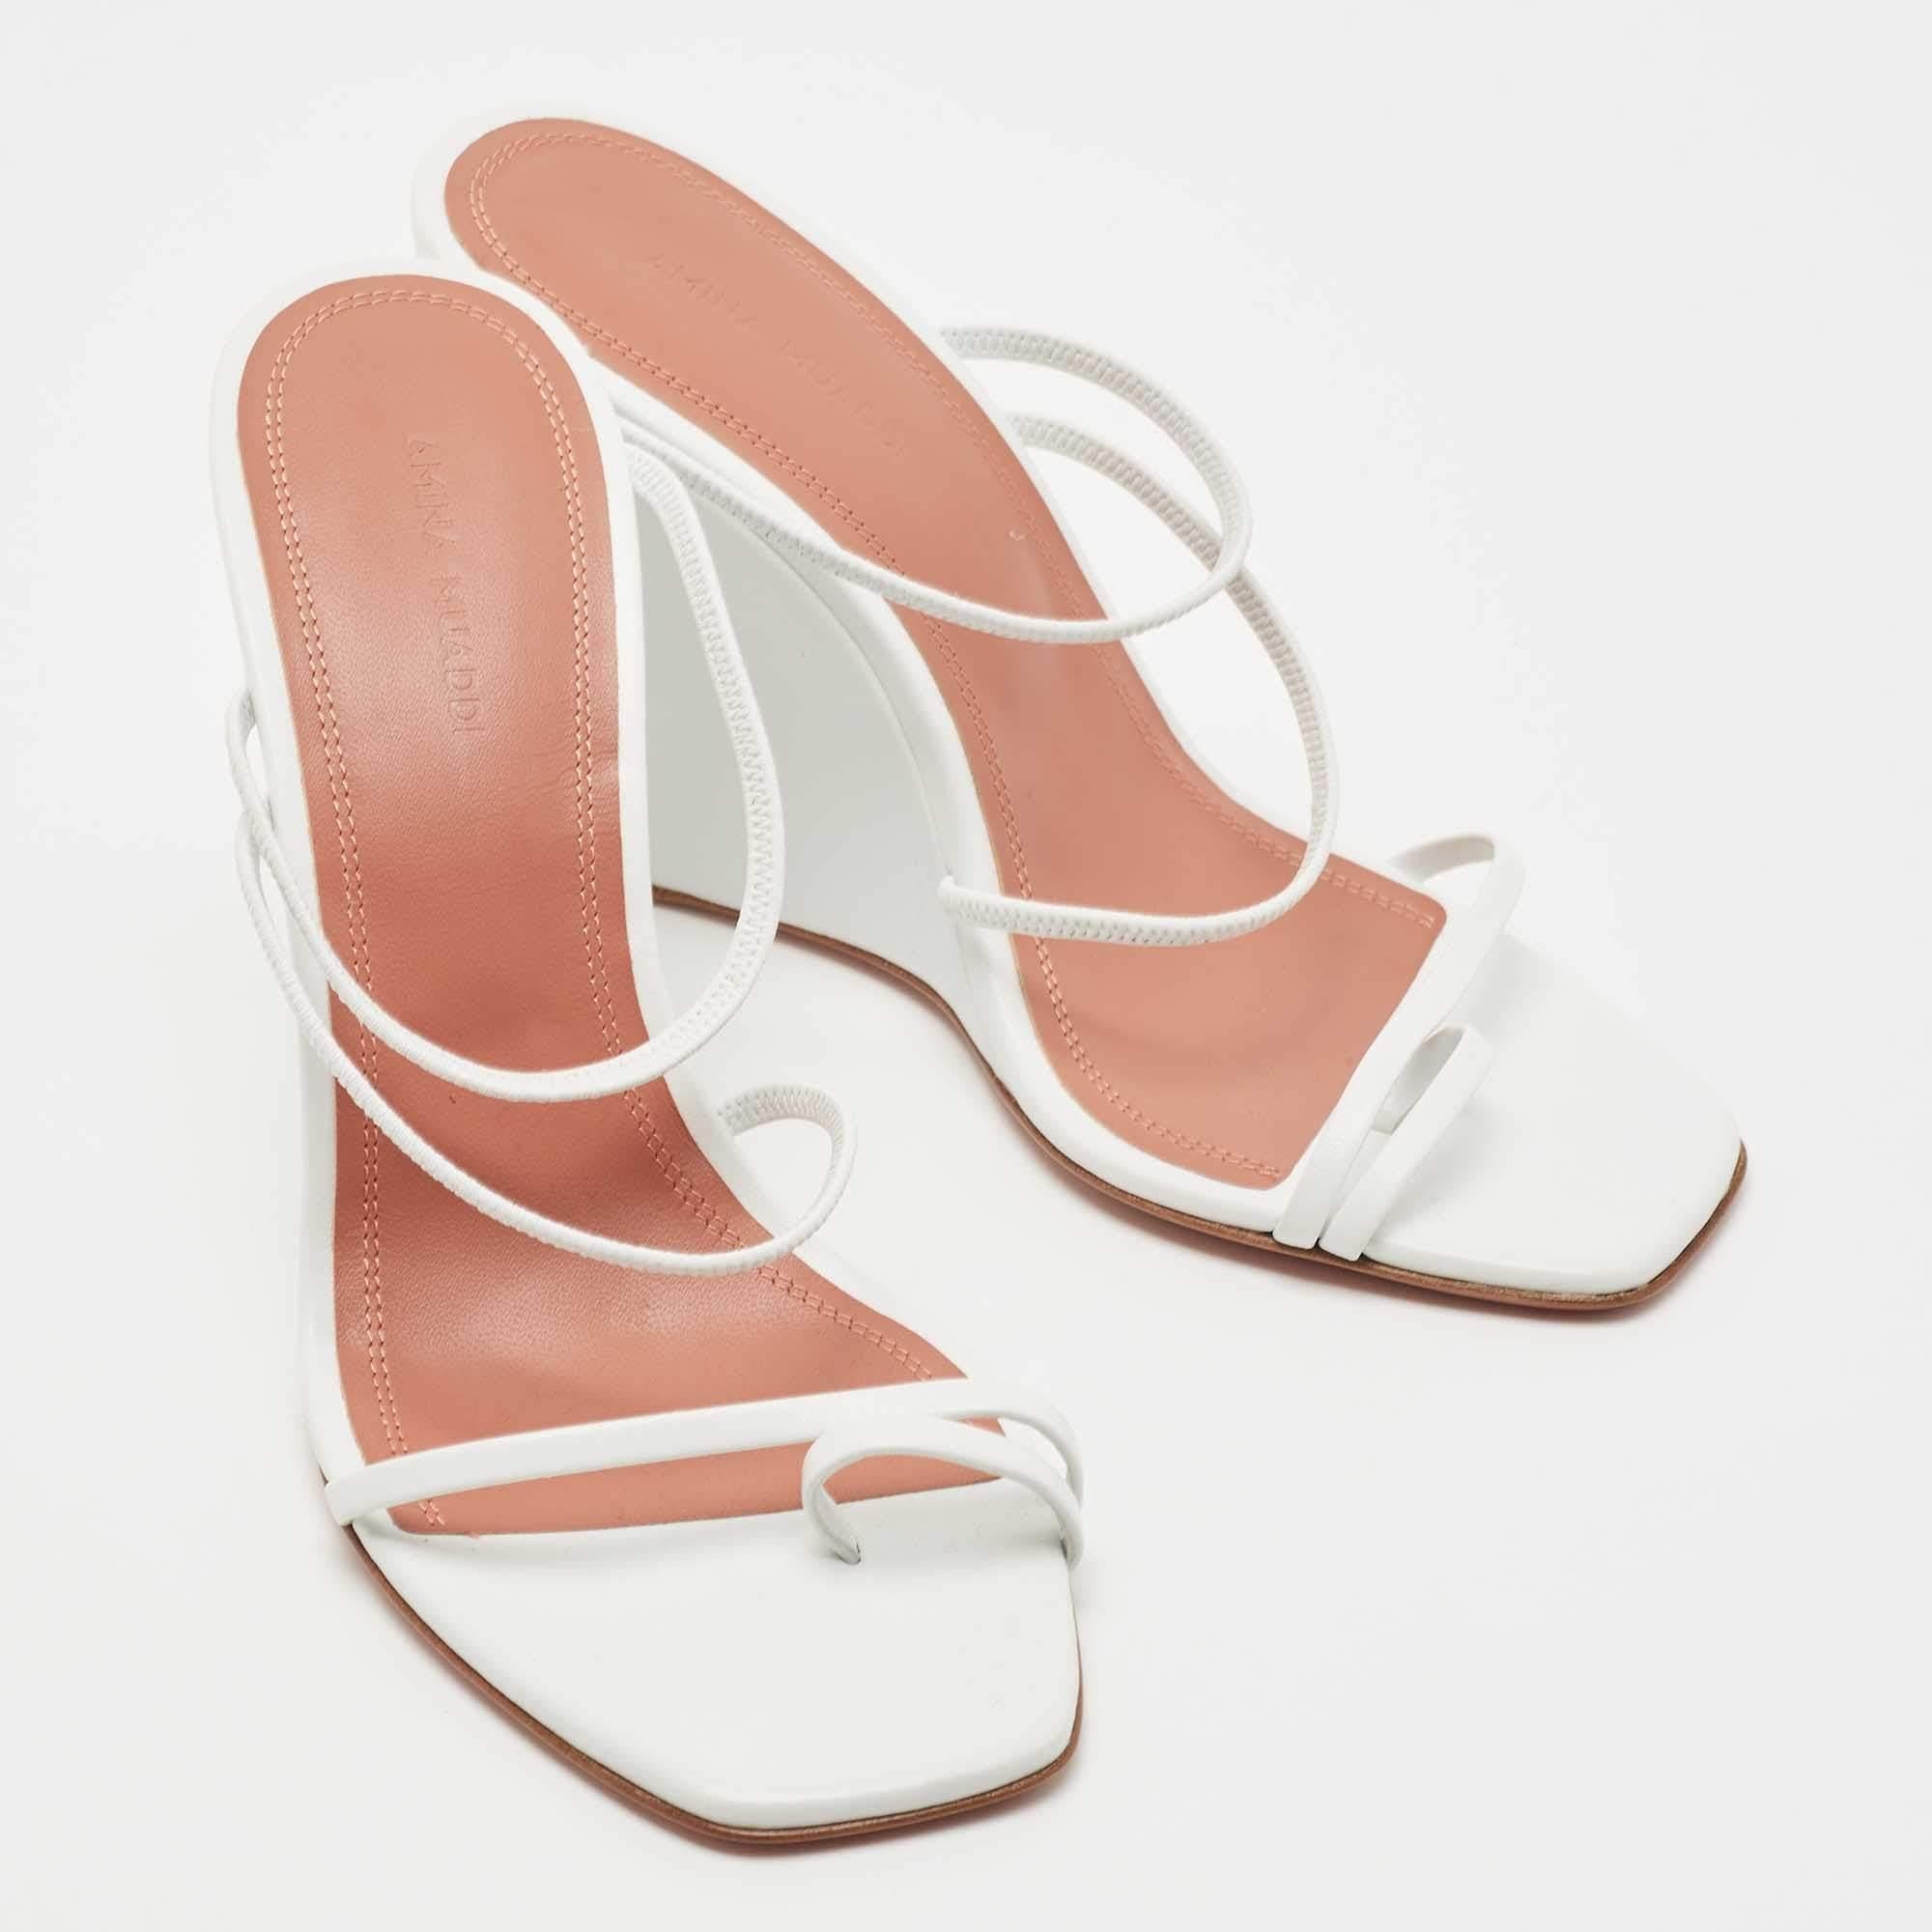 Amina Muaddi White Leather Naima Wedge Sandals Size 38 1